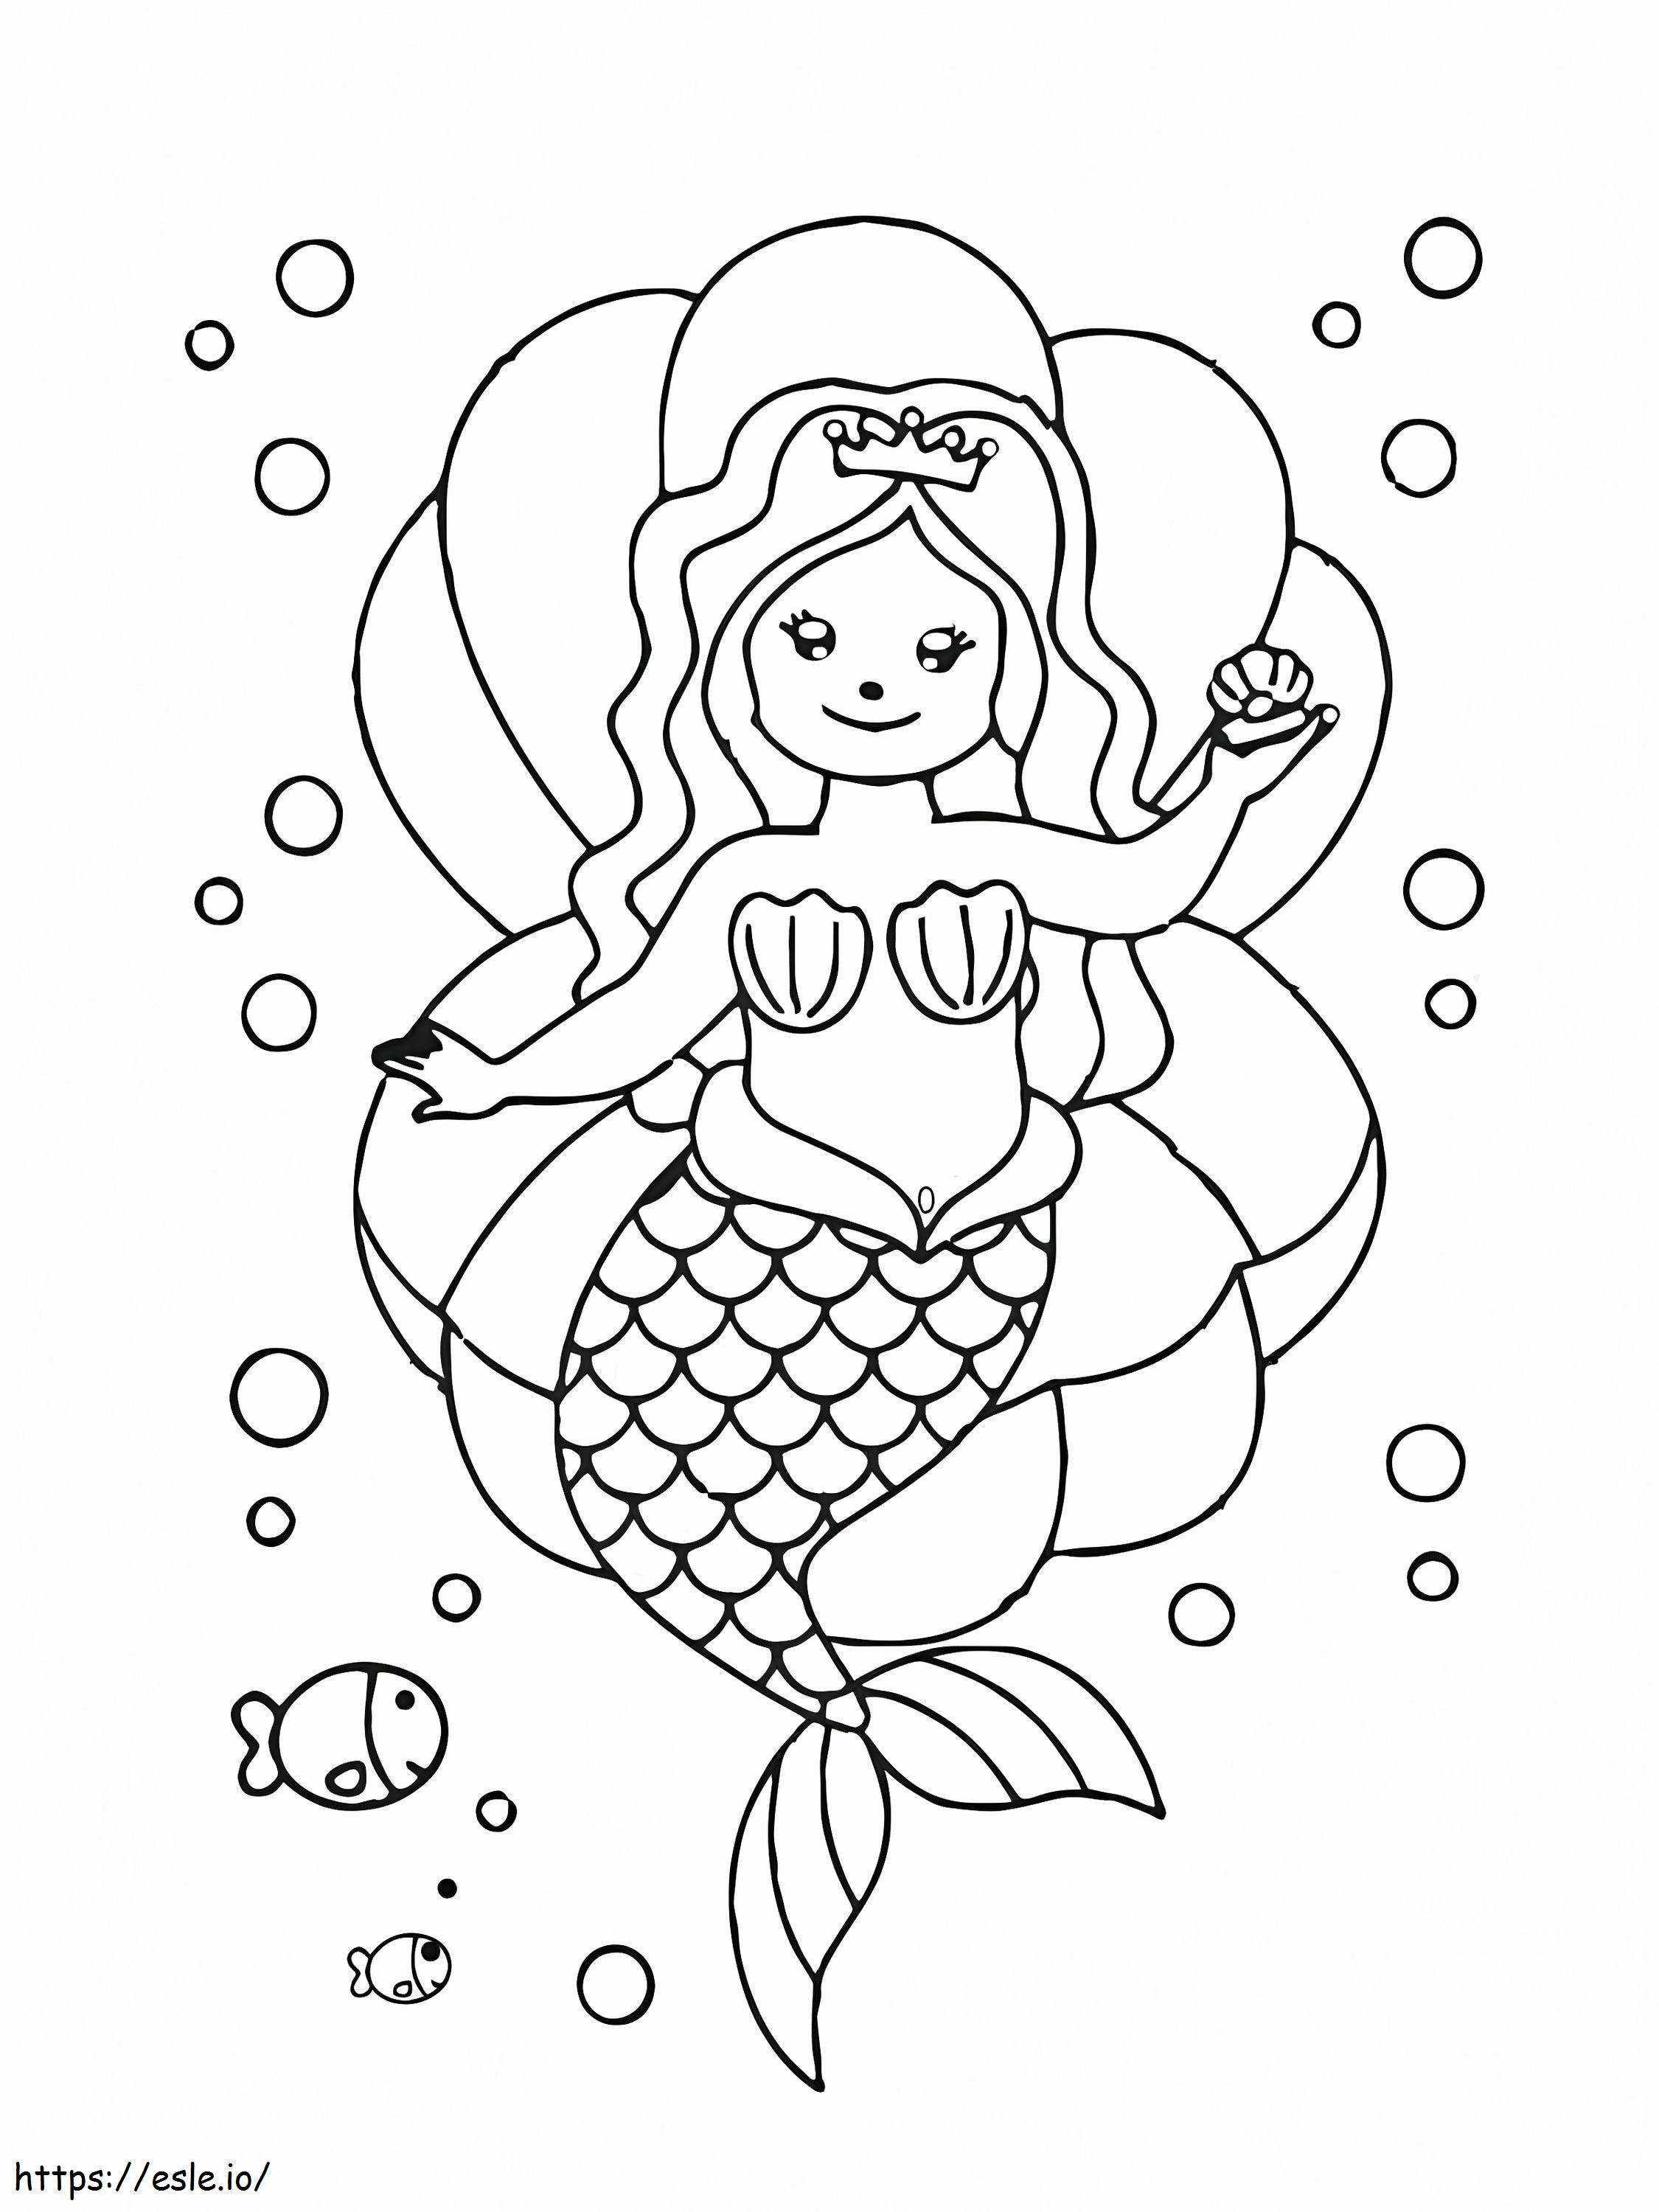 Sirena seduta sulla conchiglia da colorare